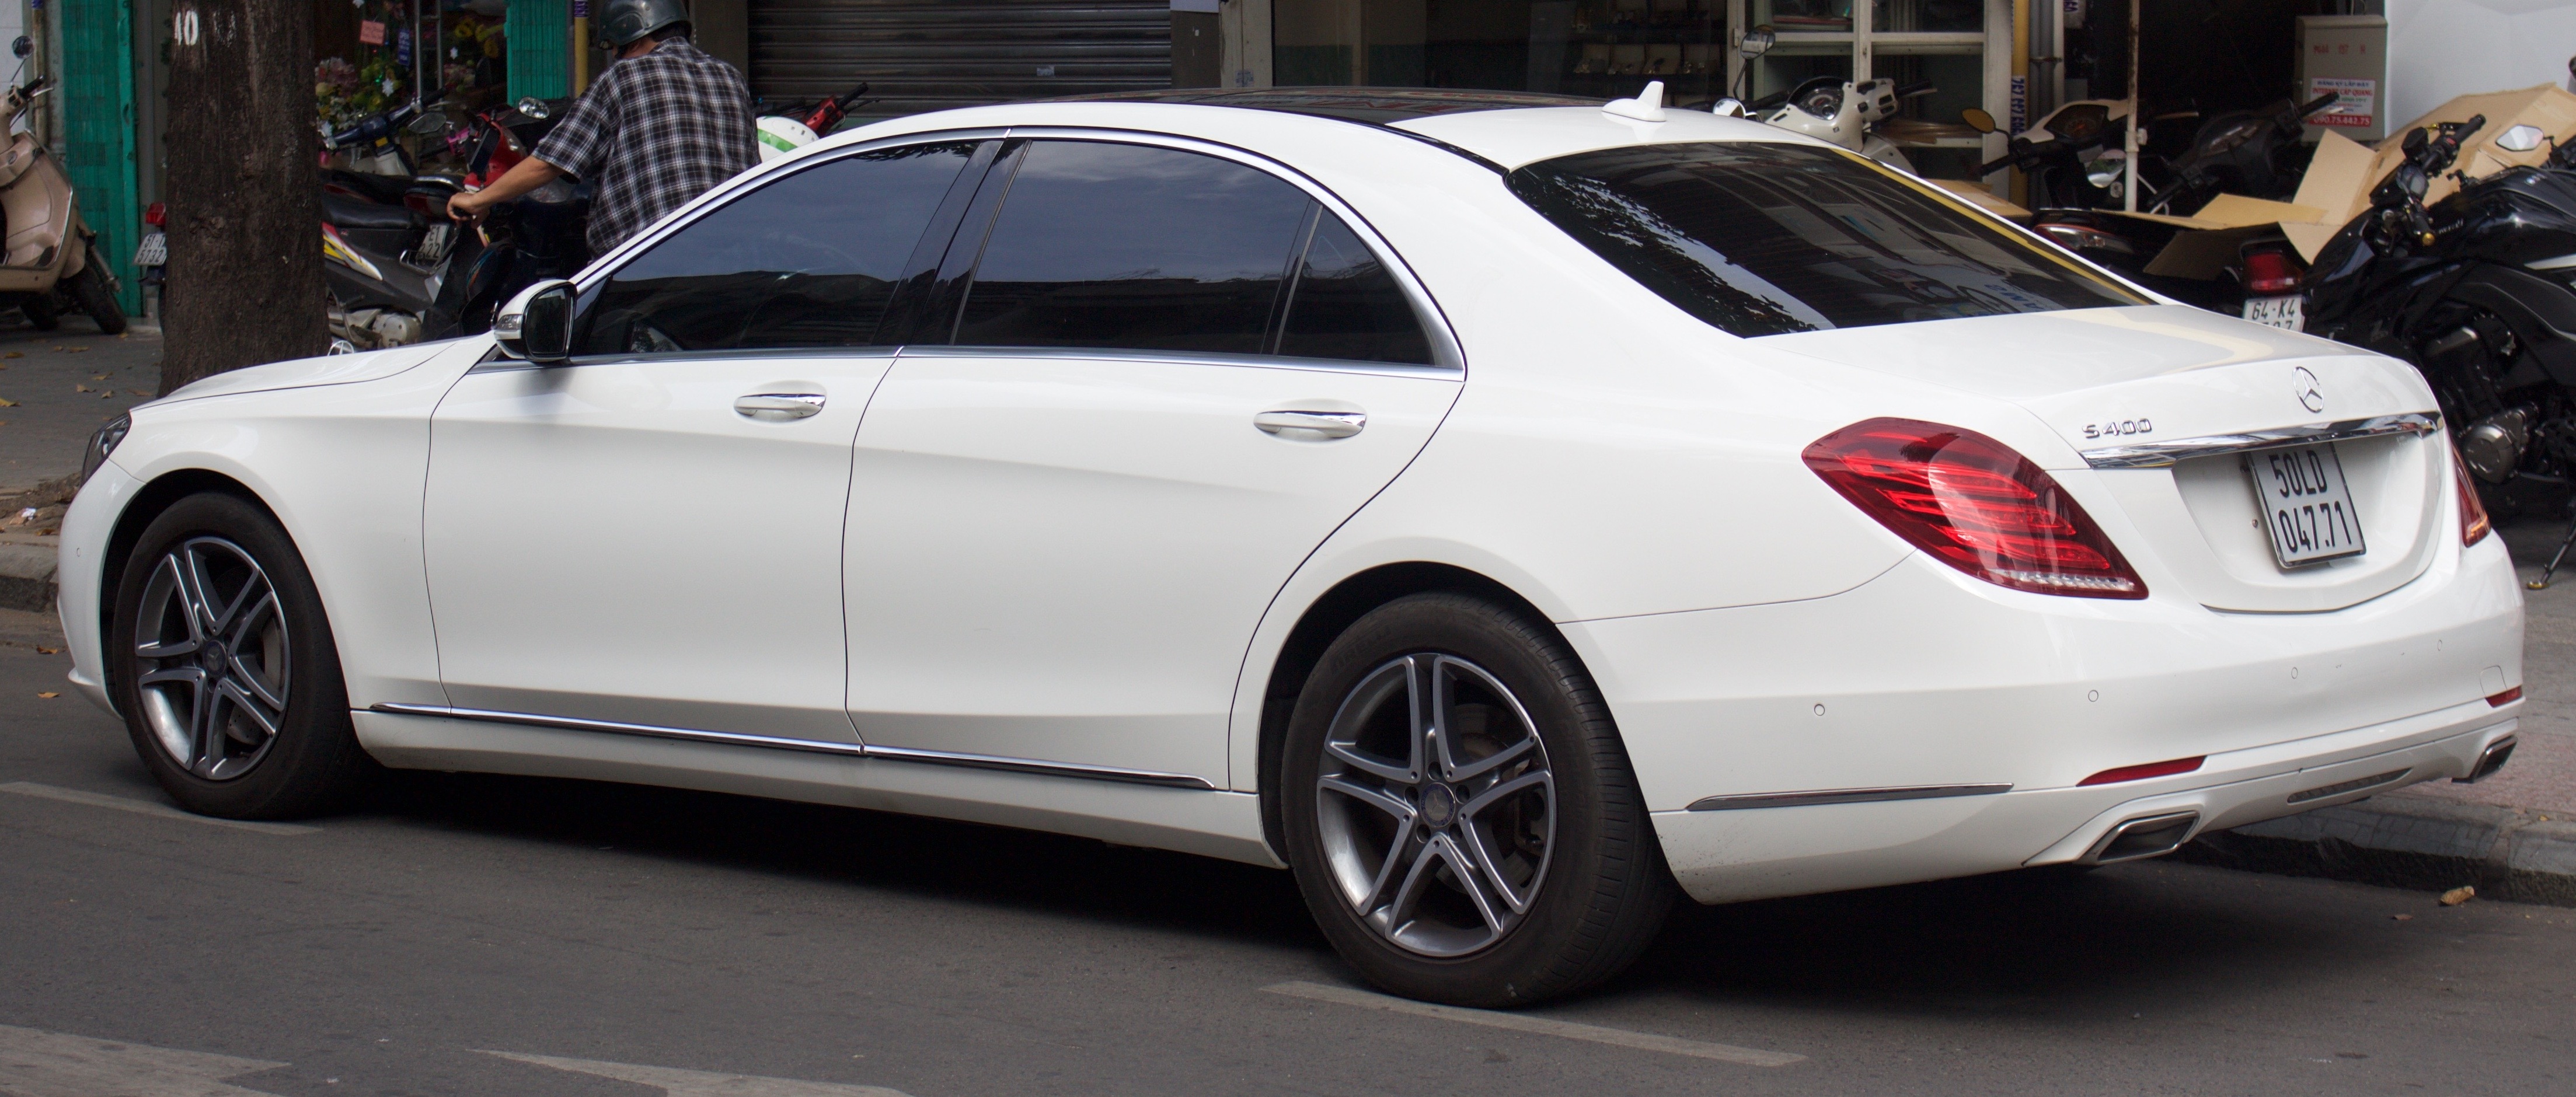 File:Mercedes-Benz Concept GLC Coupe IAA 2015.jpg - Wikipedia